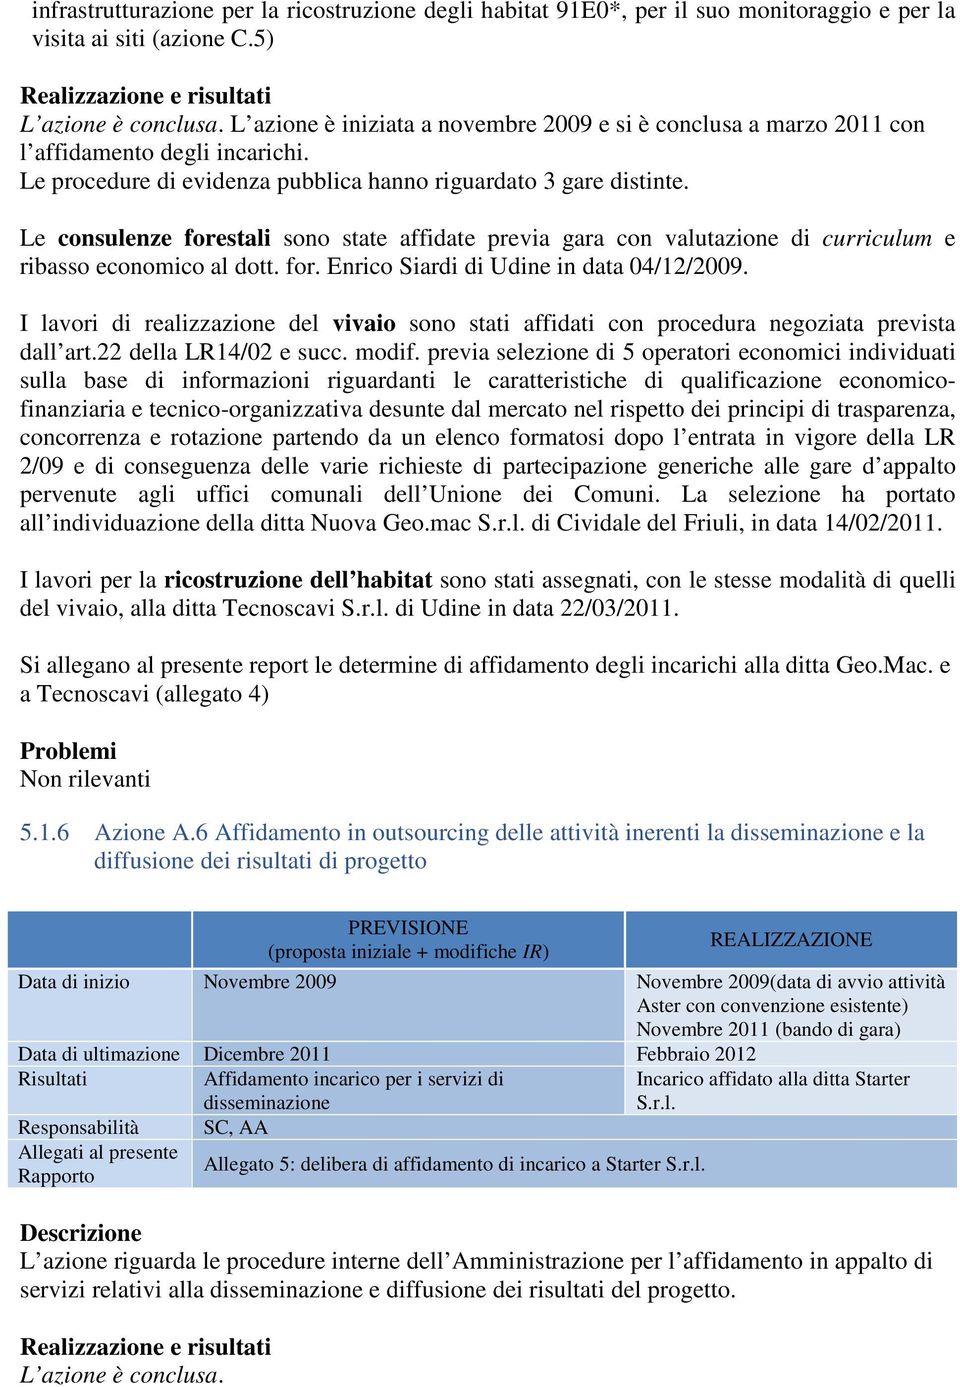 Le consulenze forestali sono state affidate previa gara con valutazione di curriculum e ribasso economico al dott. for. Enrico Siardi di Udine in data 04/12/2009.